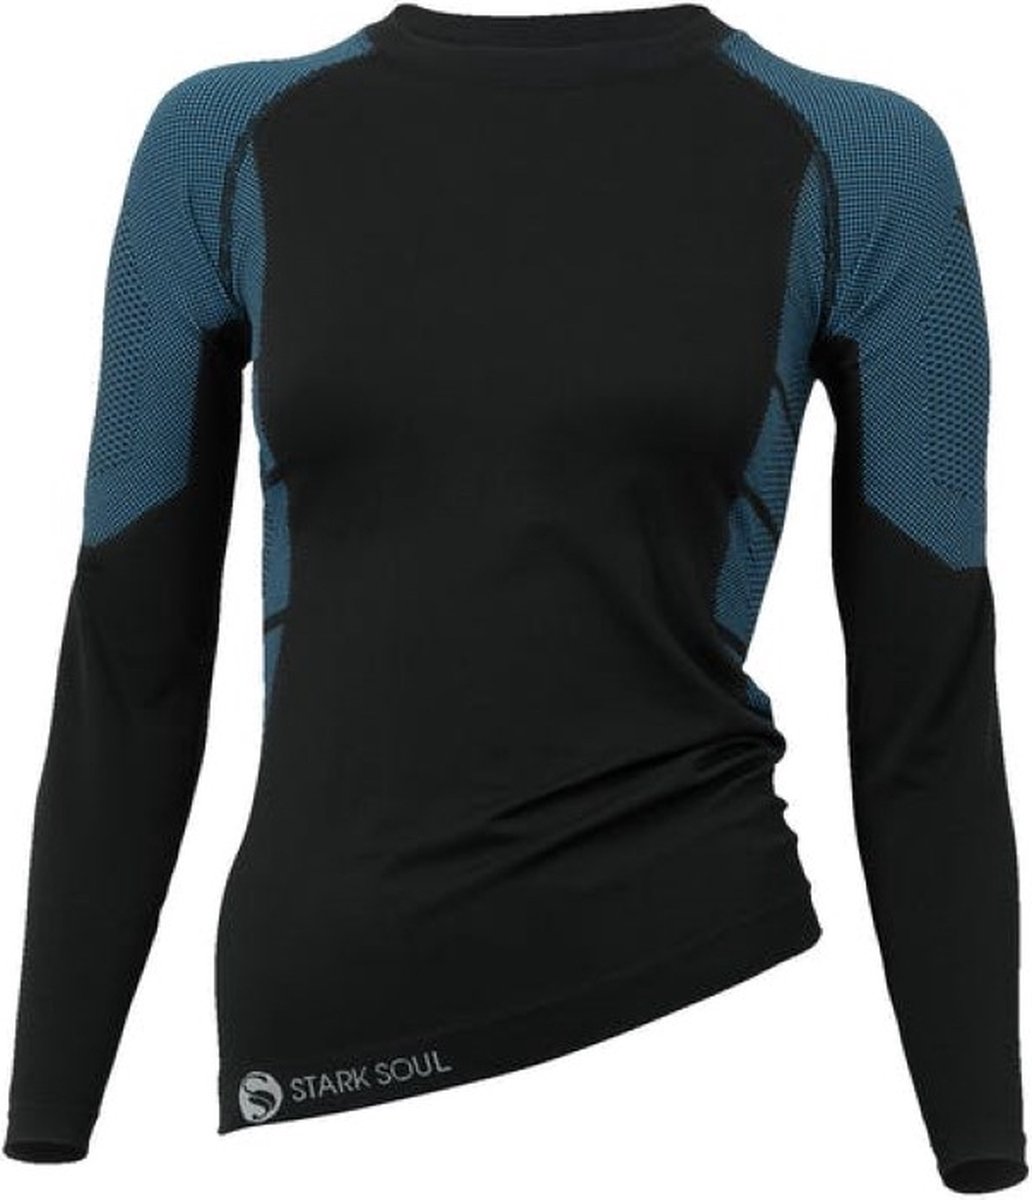 Dames thermoshirt met lange mouwen - Zwart/Turquoise - Maat L/XL